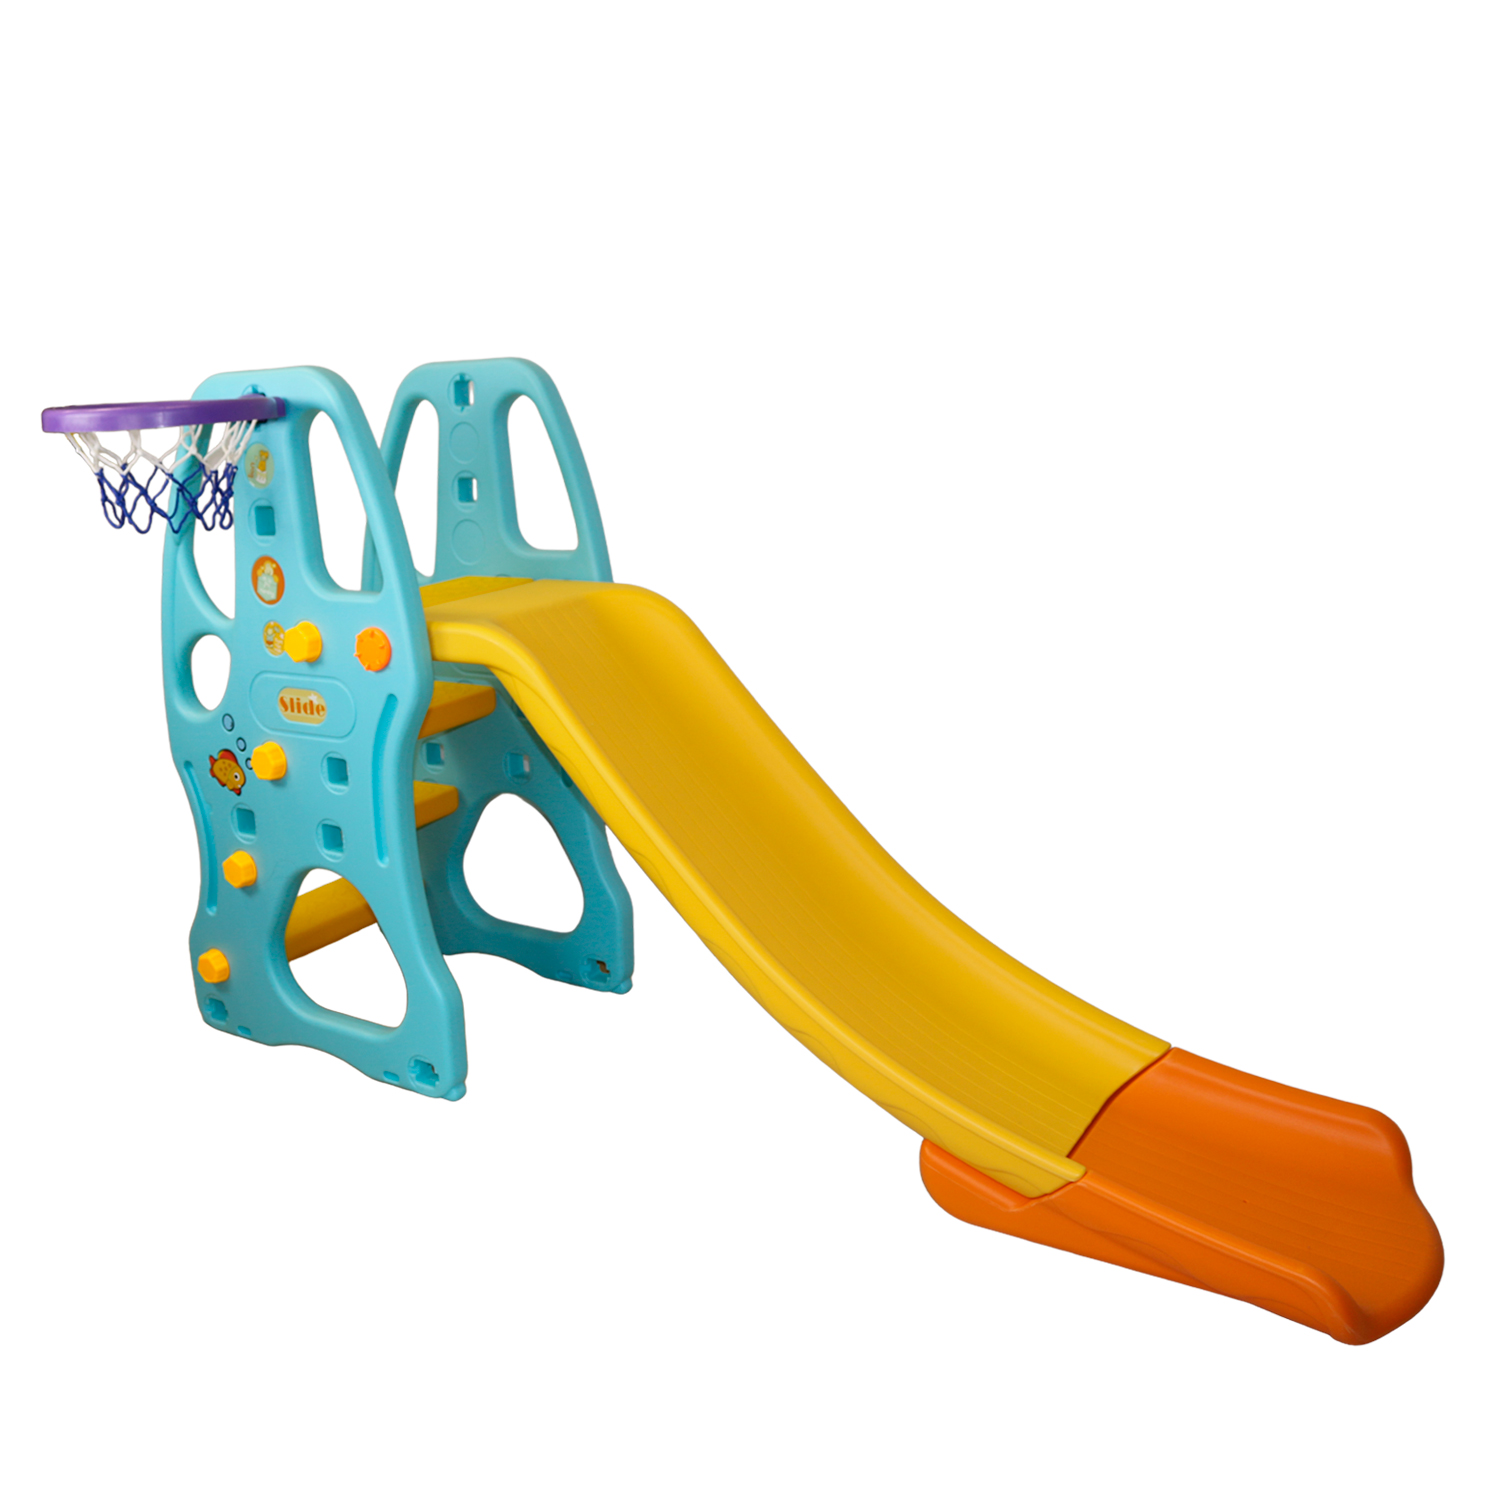 Пластиковая горка с баскетбольным кольцом Kampfer Amber Slide, голубой/желтый горка kampfer с баскетбольным кольцом amber slide